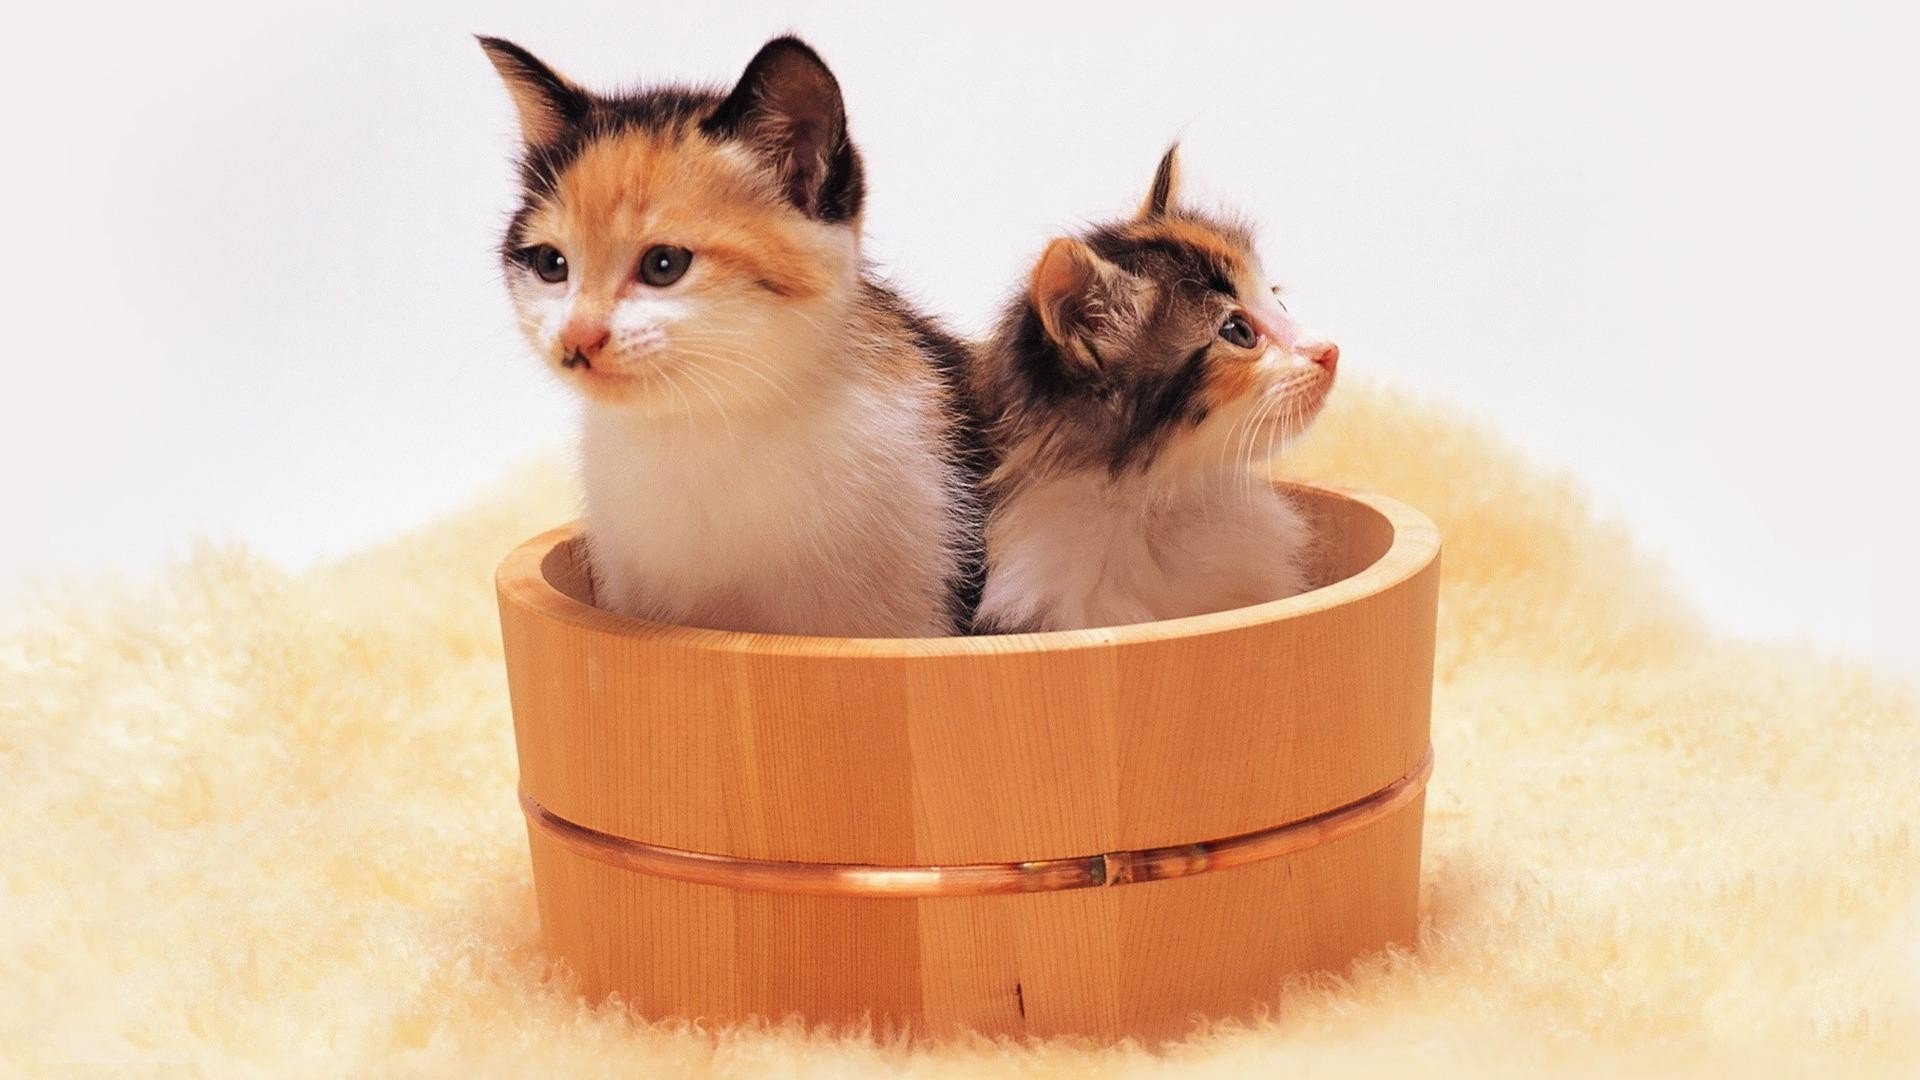 cats, Animals, Kittens, Bucket Wallpaper